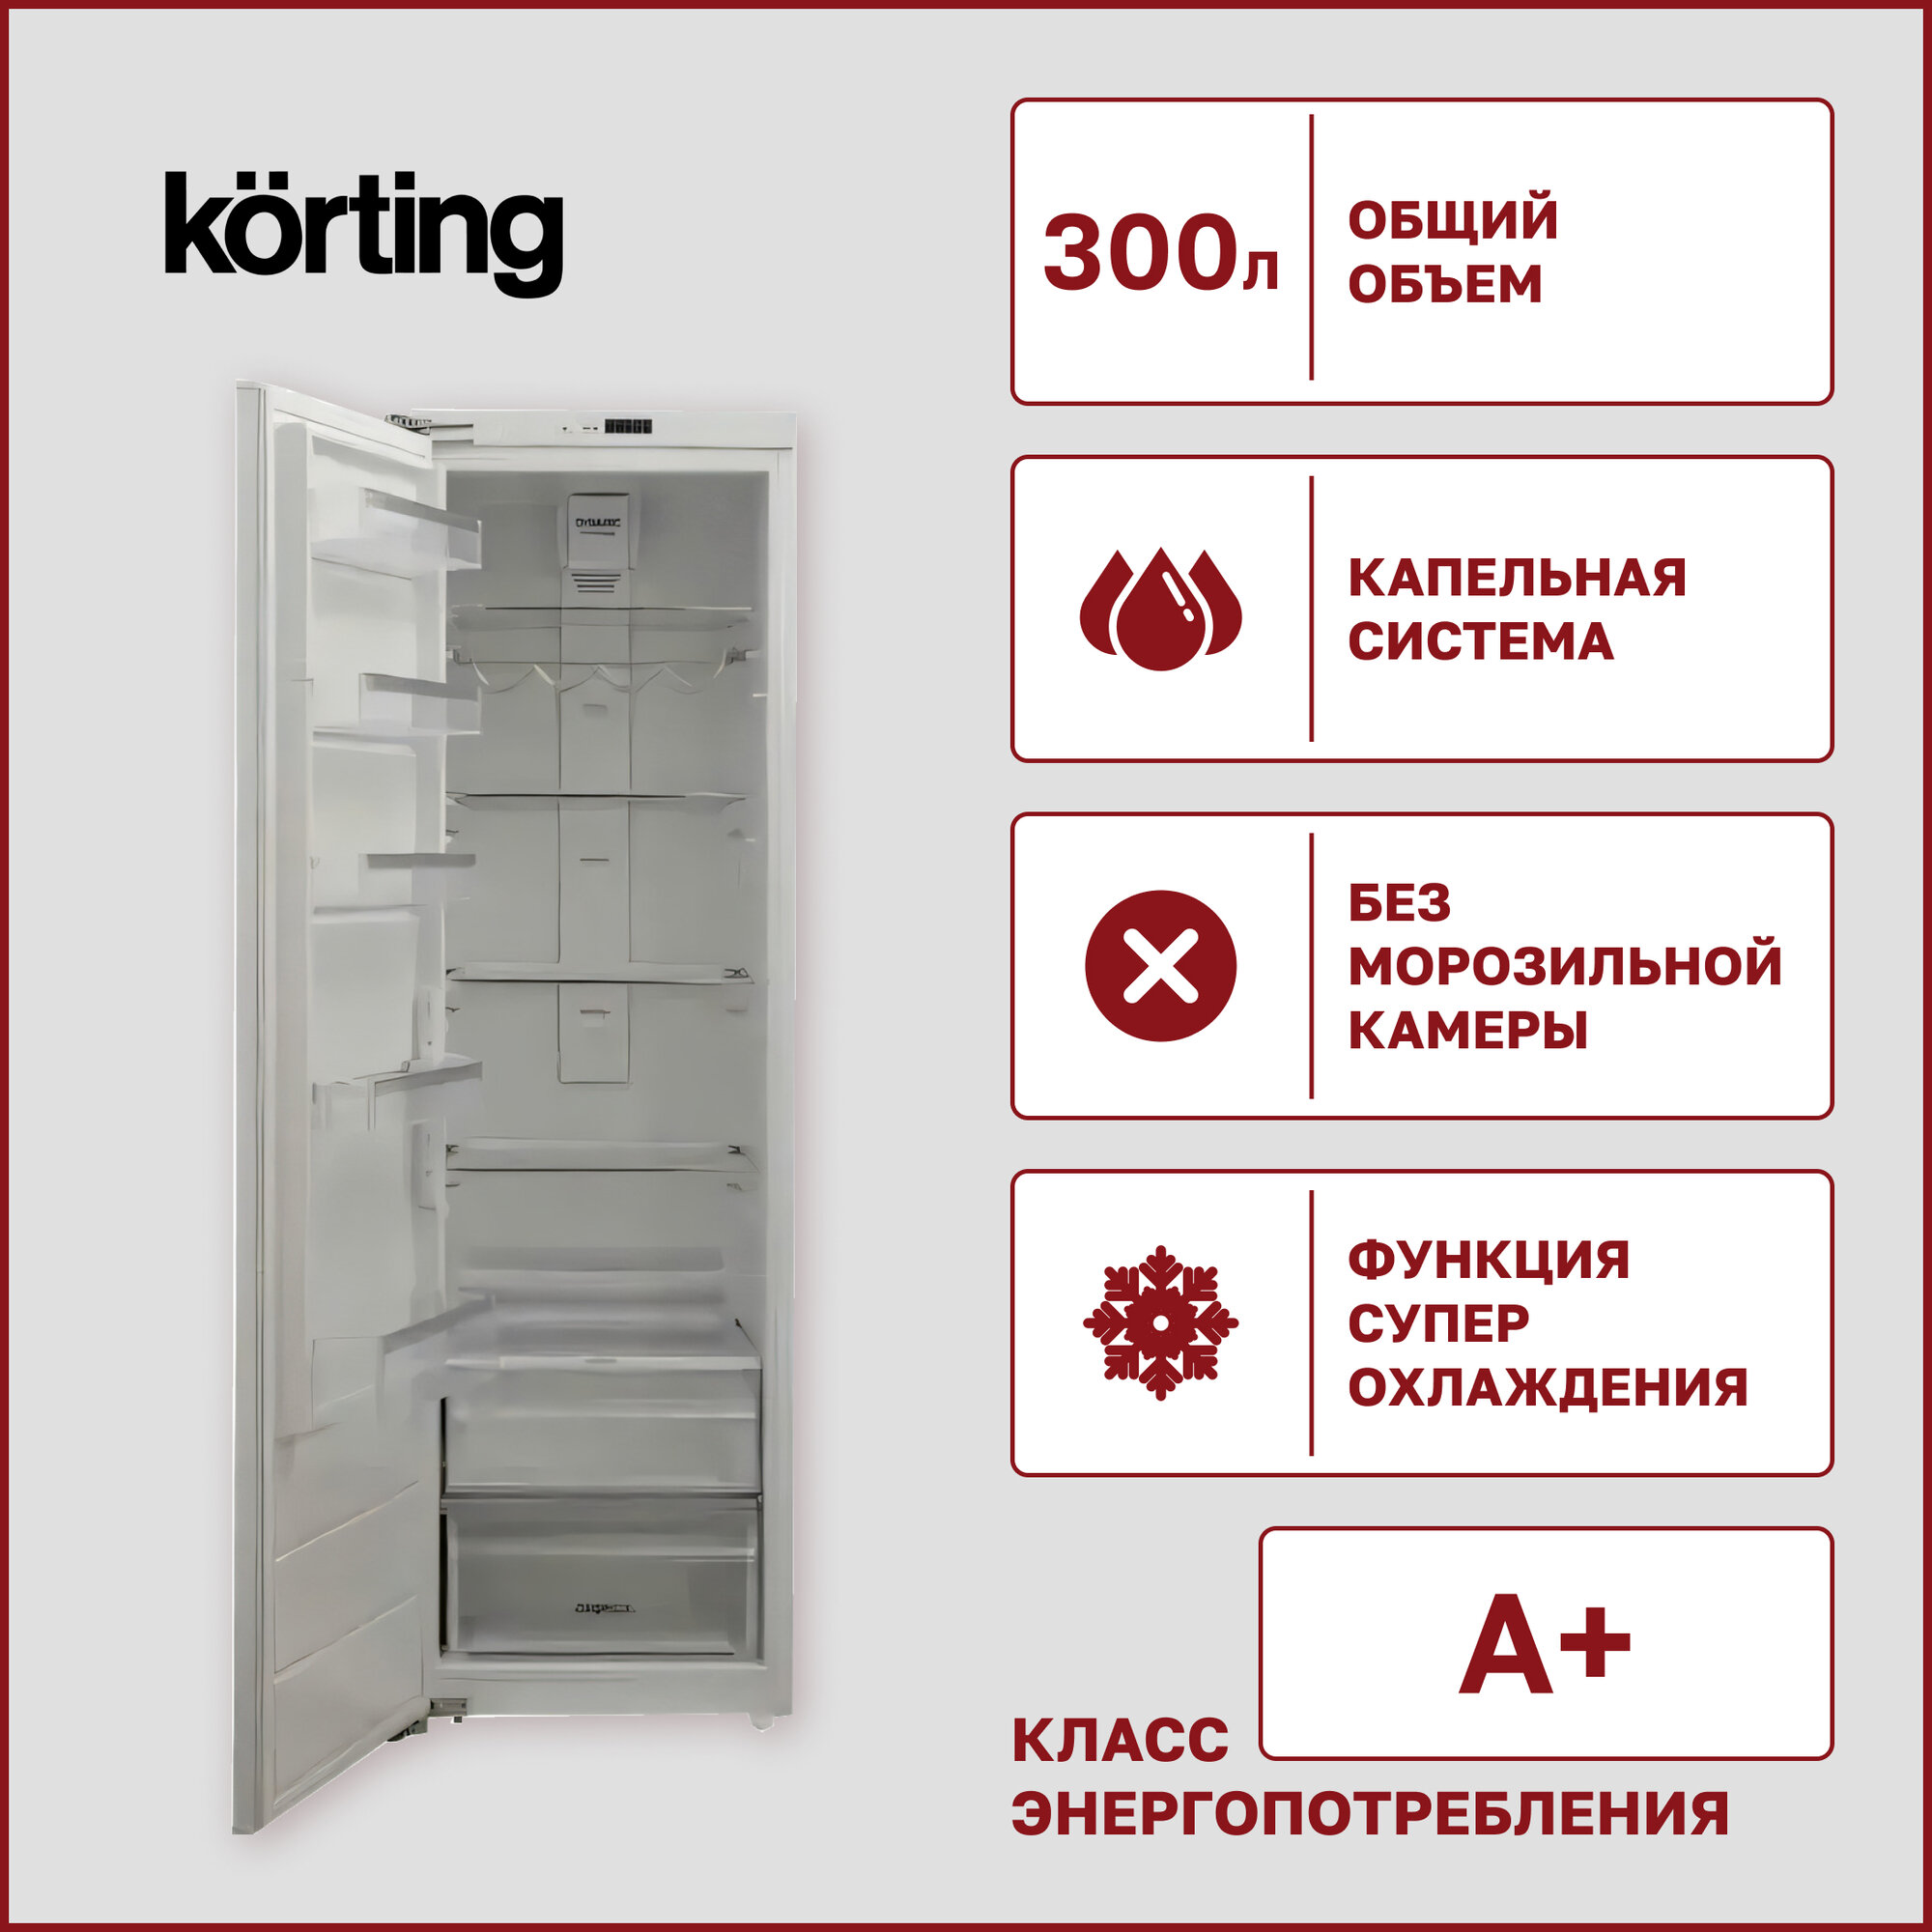 Встраиваемый однокамерный холодильник Korting - фото №4